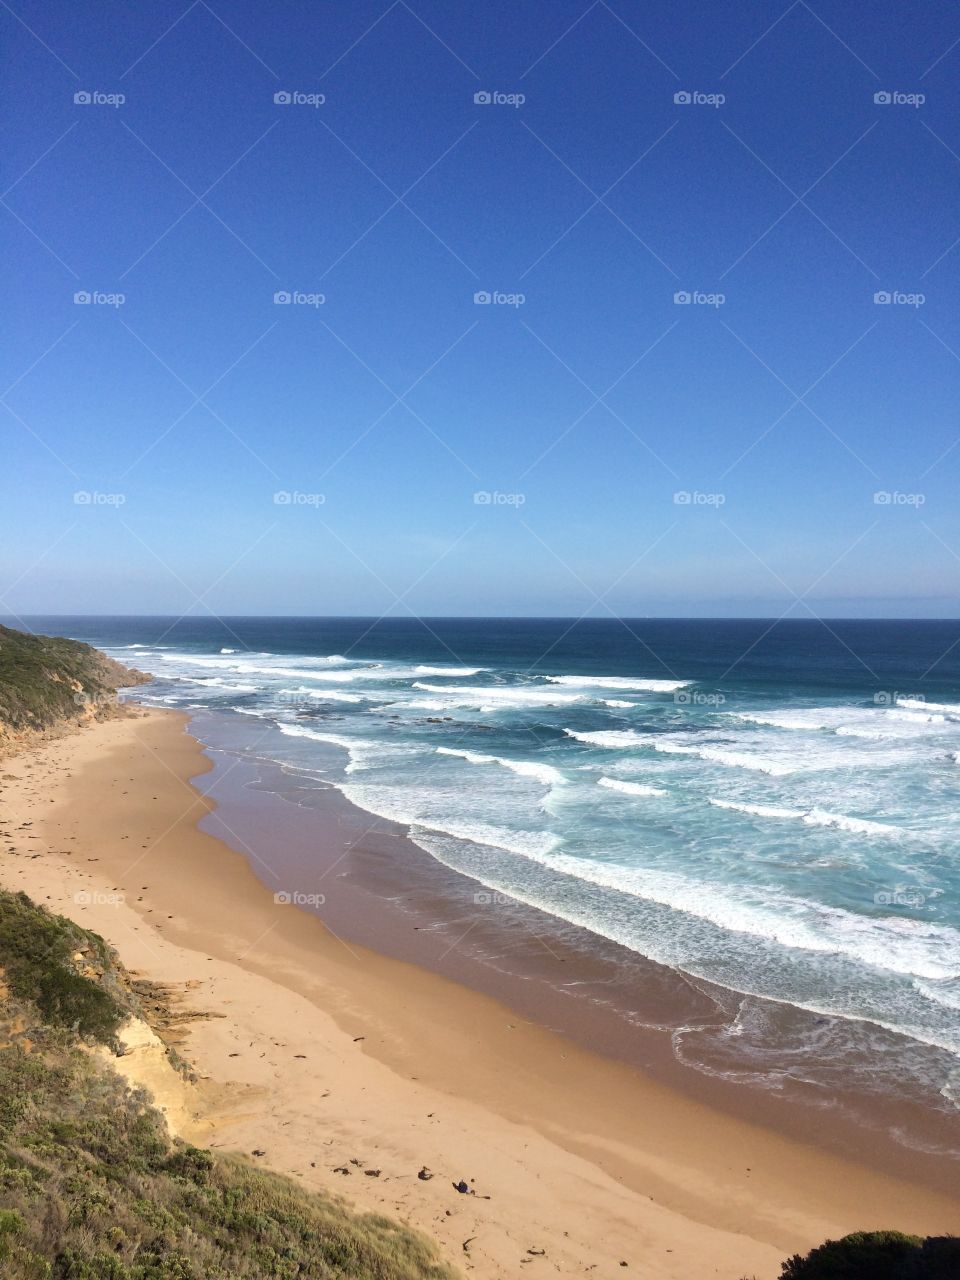 Beautiful beach in Australia twenty apostle